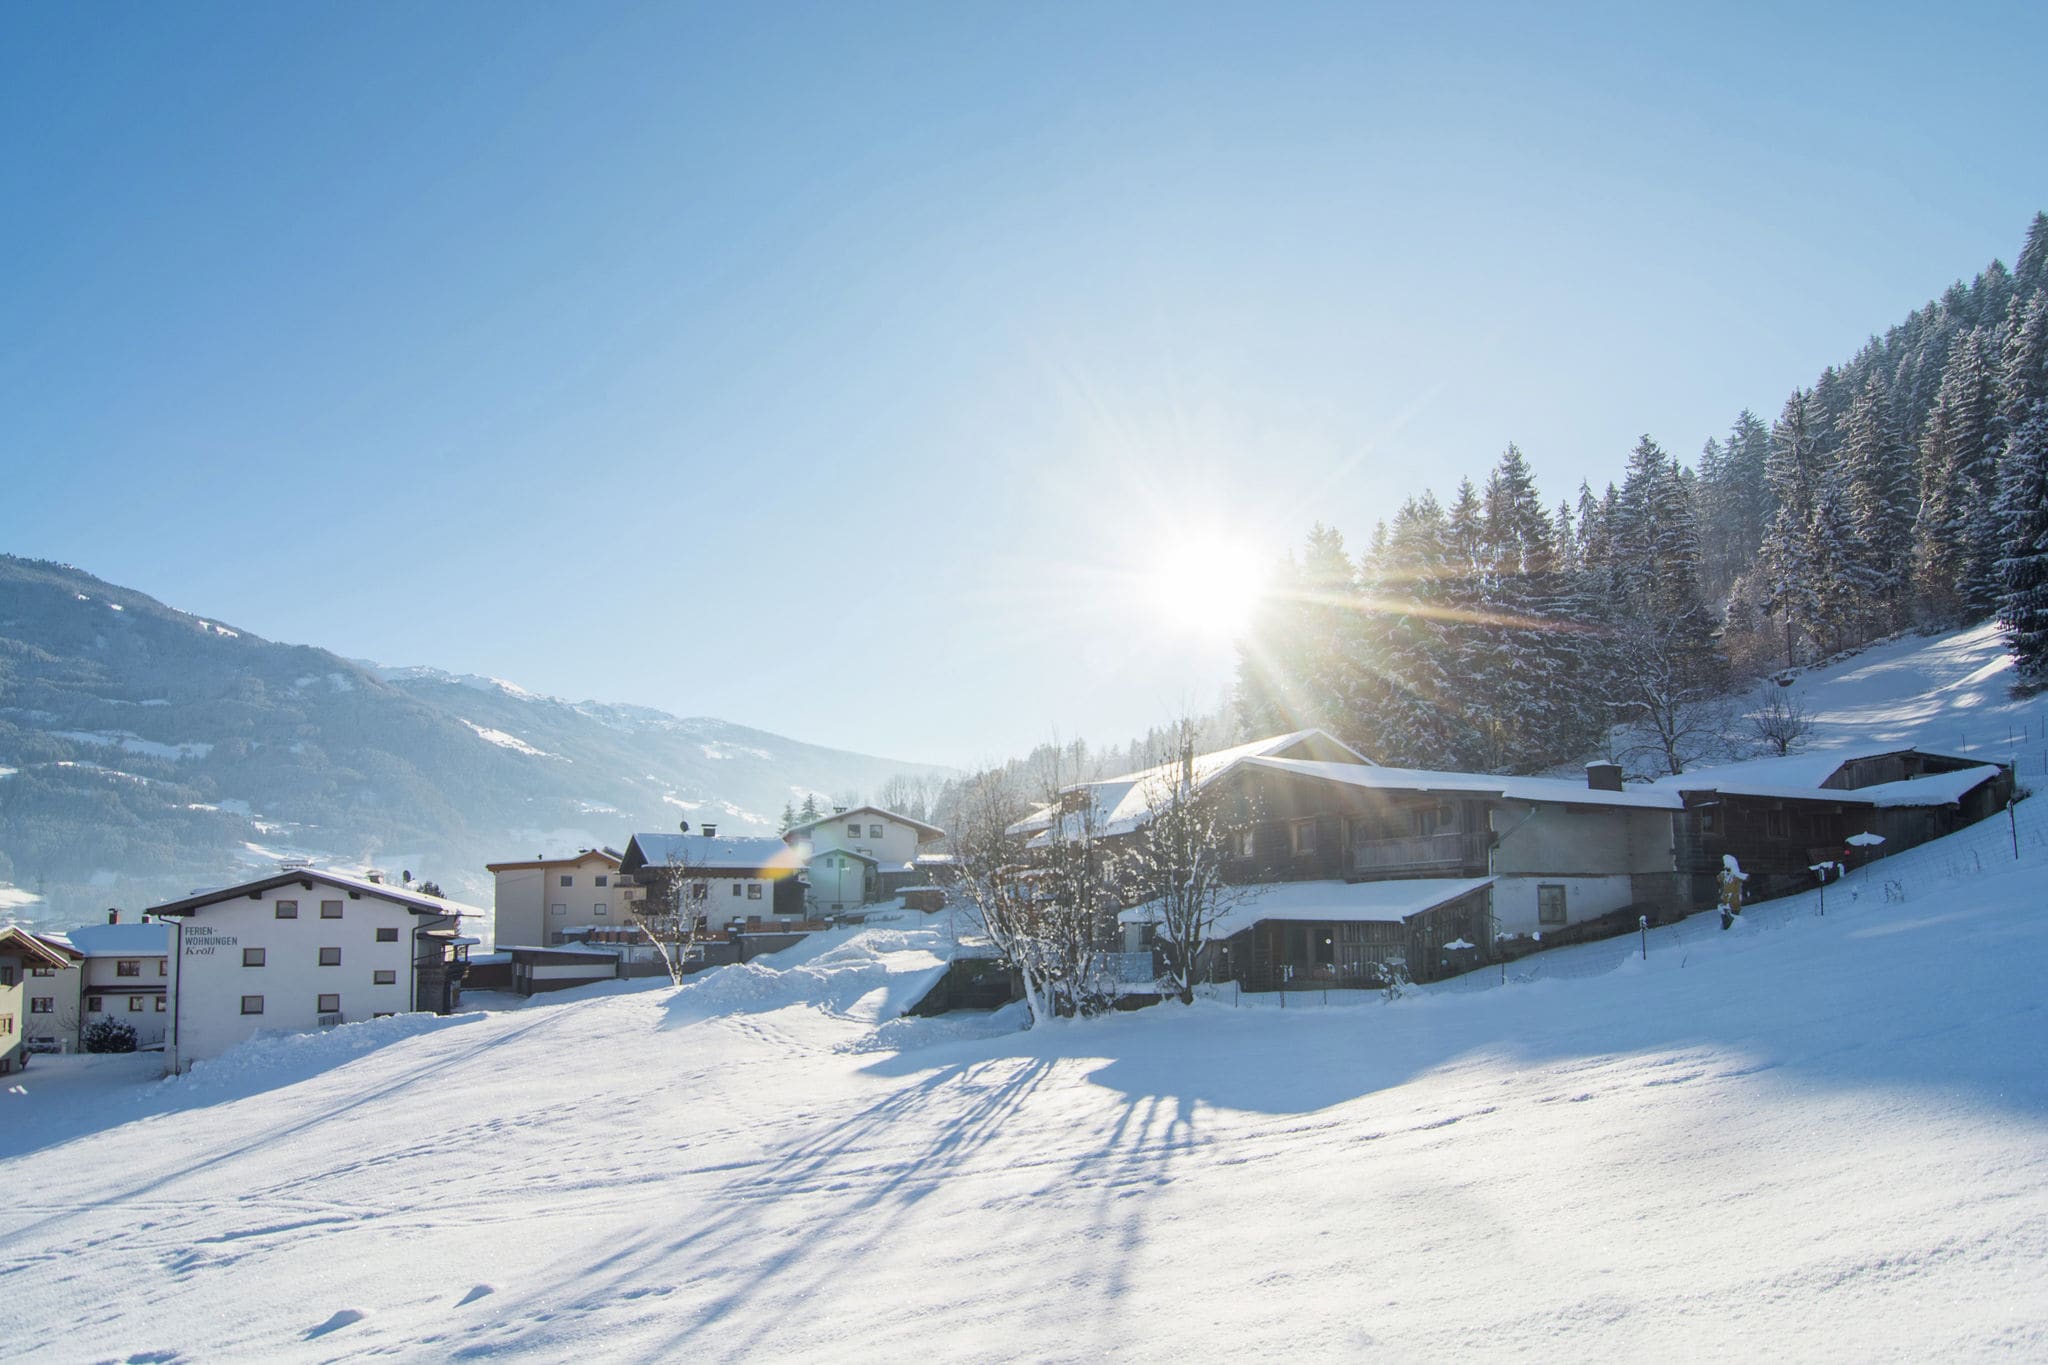 Ferienwohnung in Kaltenbach Tirol in Skigebietnähe